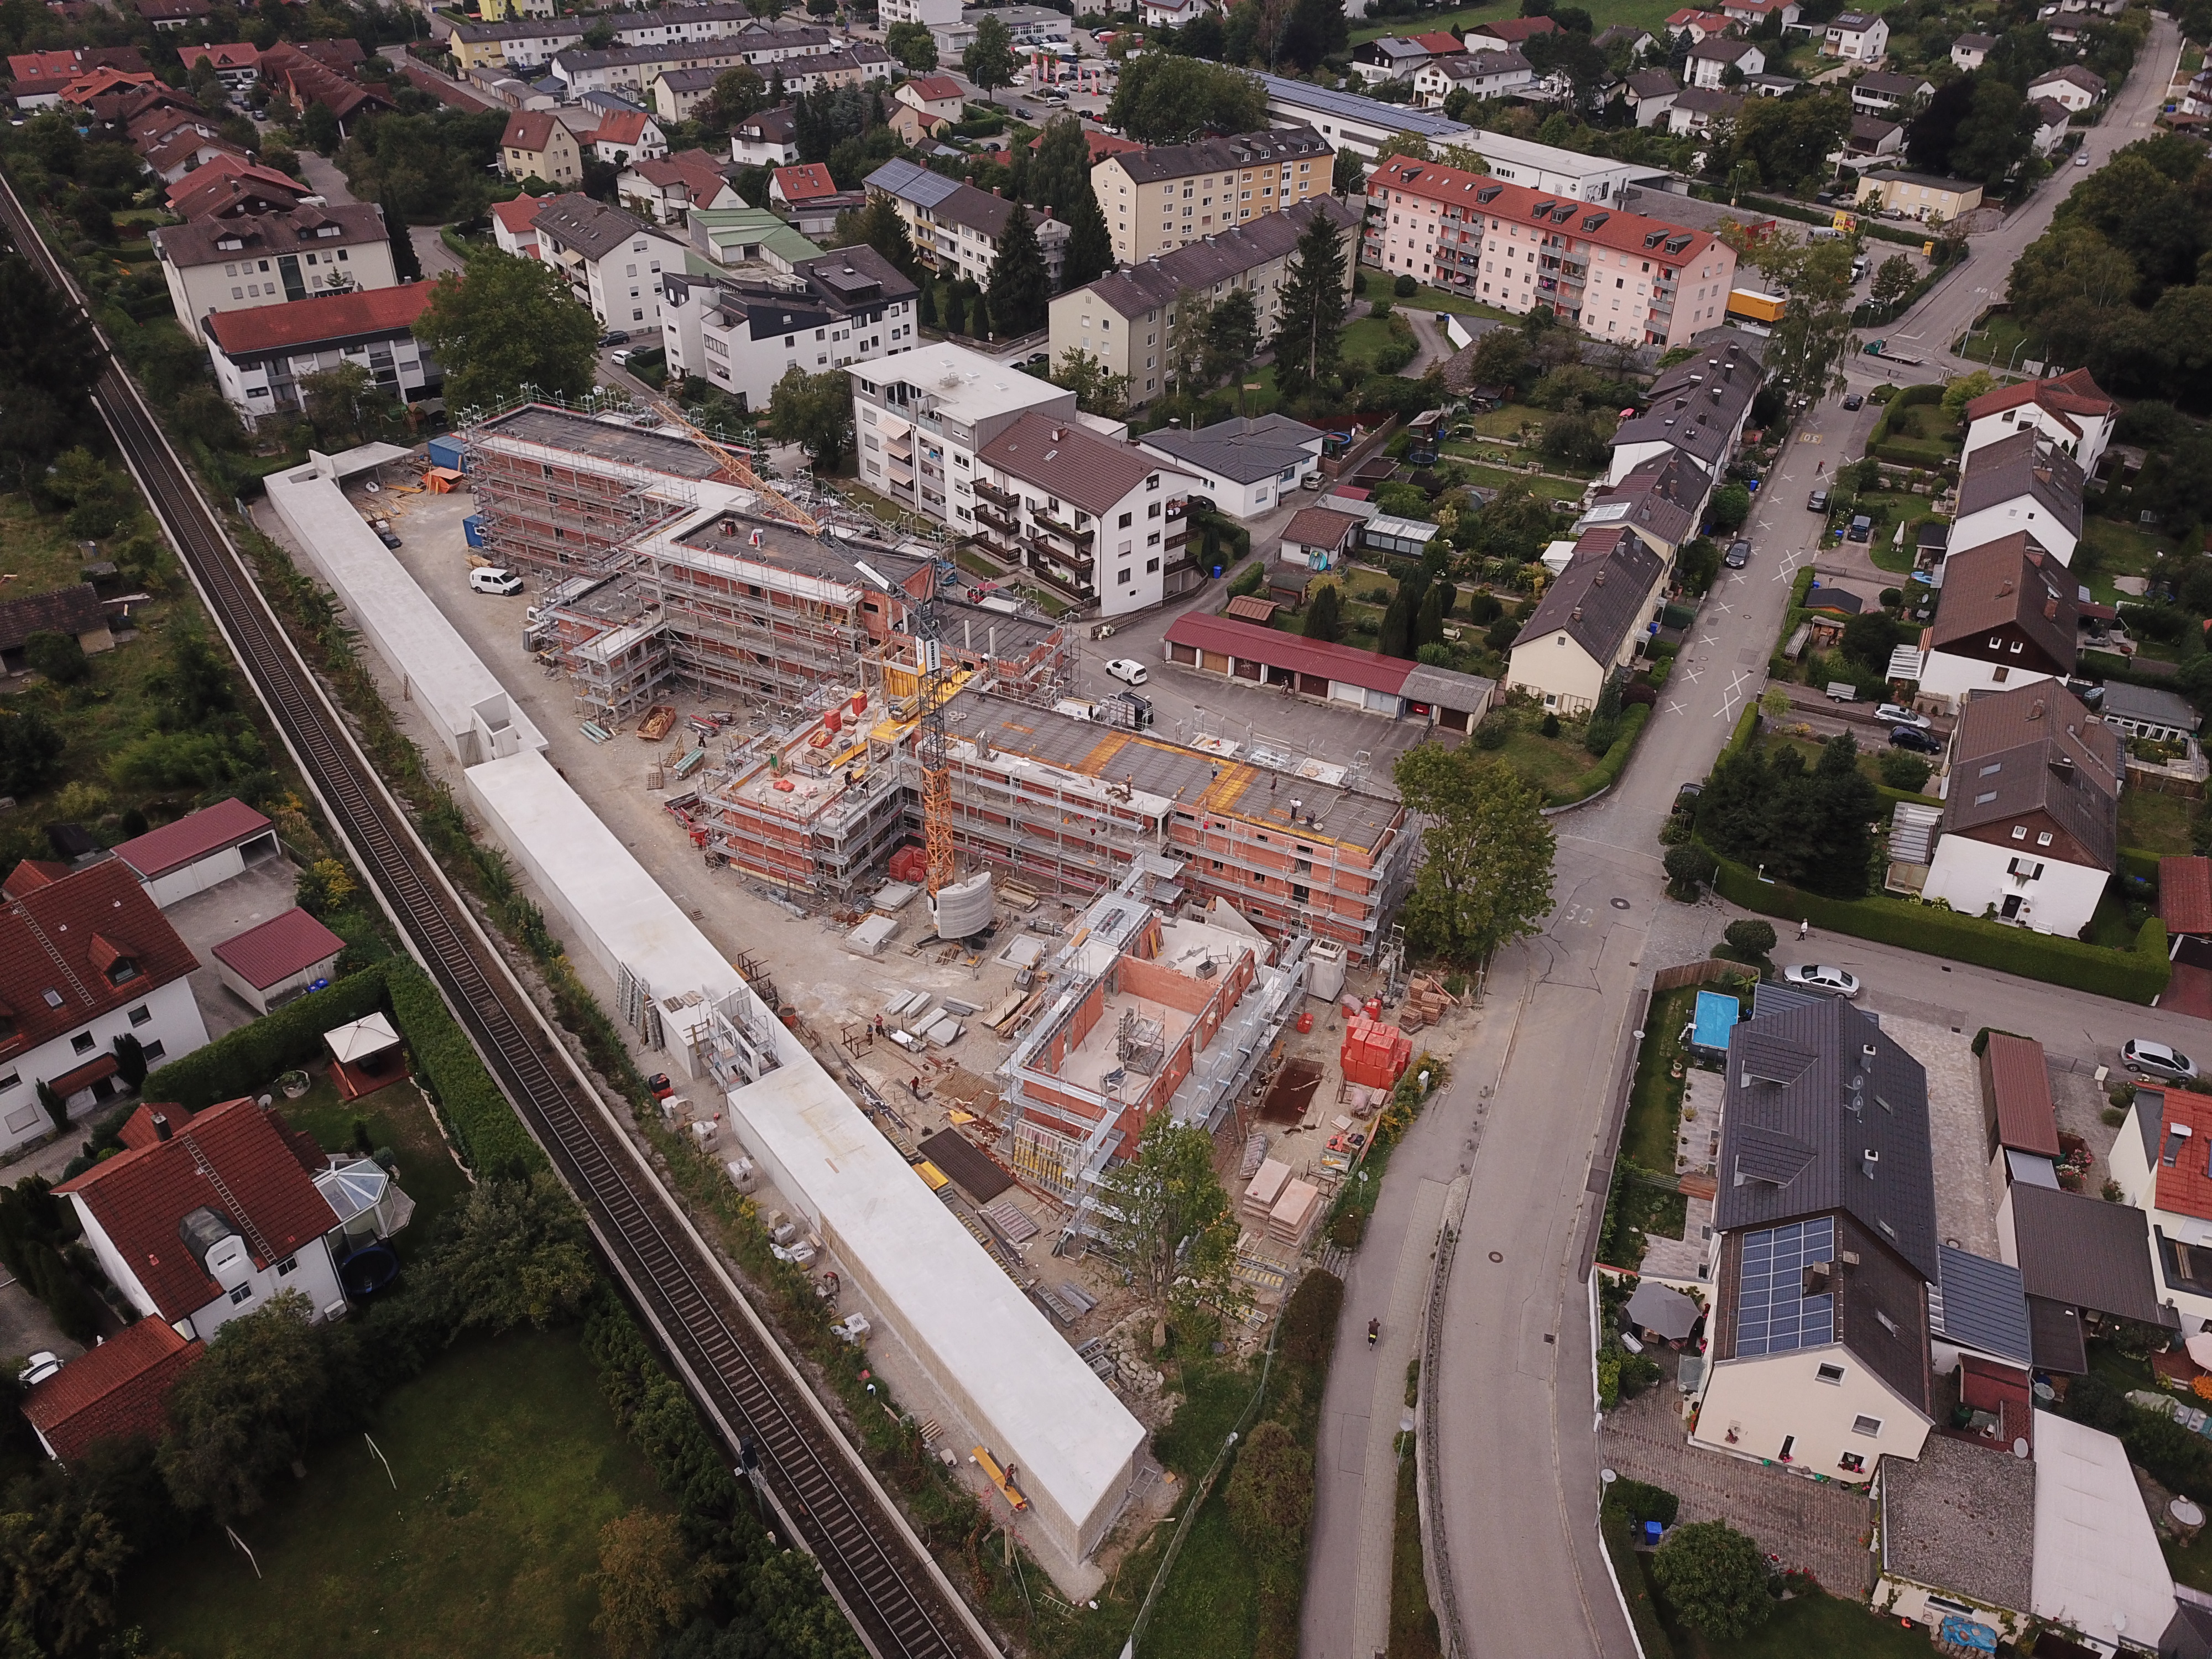 Wohnanlage Immanuel-Kant-Straße, Burghausen - Building construction